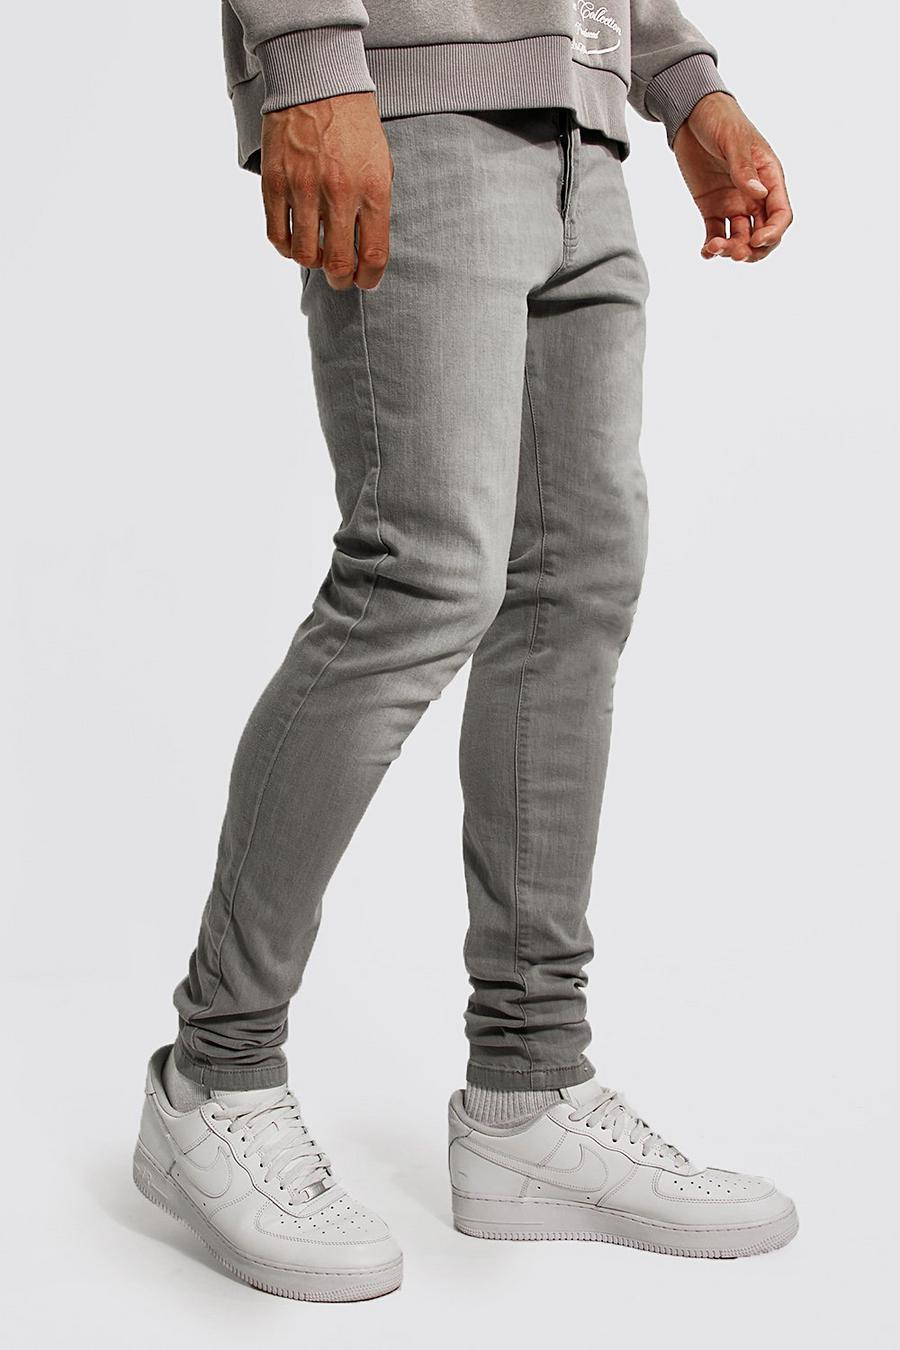 אפור gris סקיני ג'ינס לנשים גבוהות